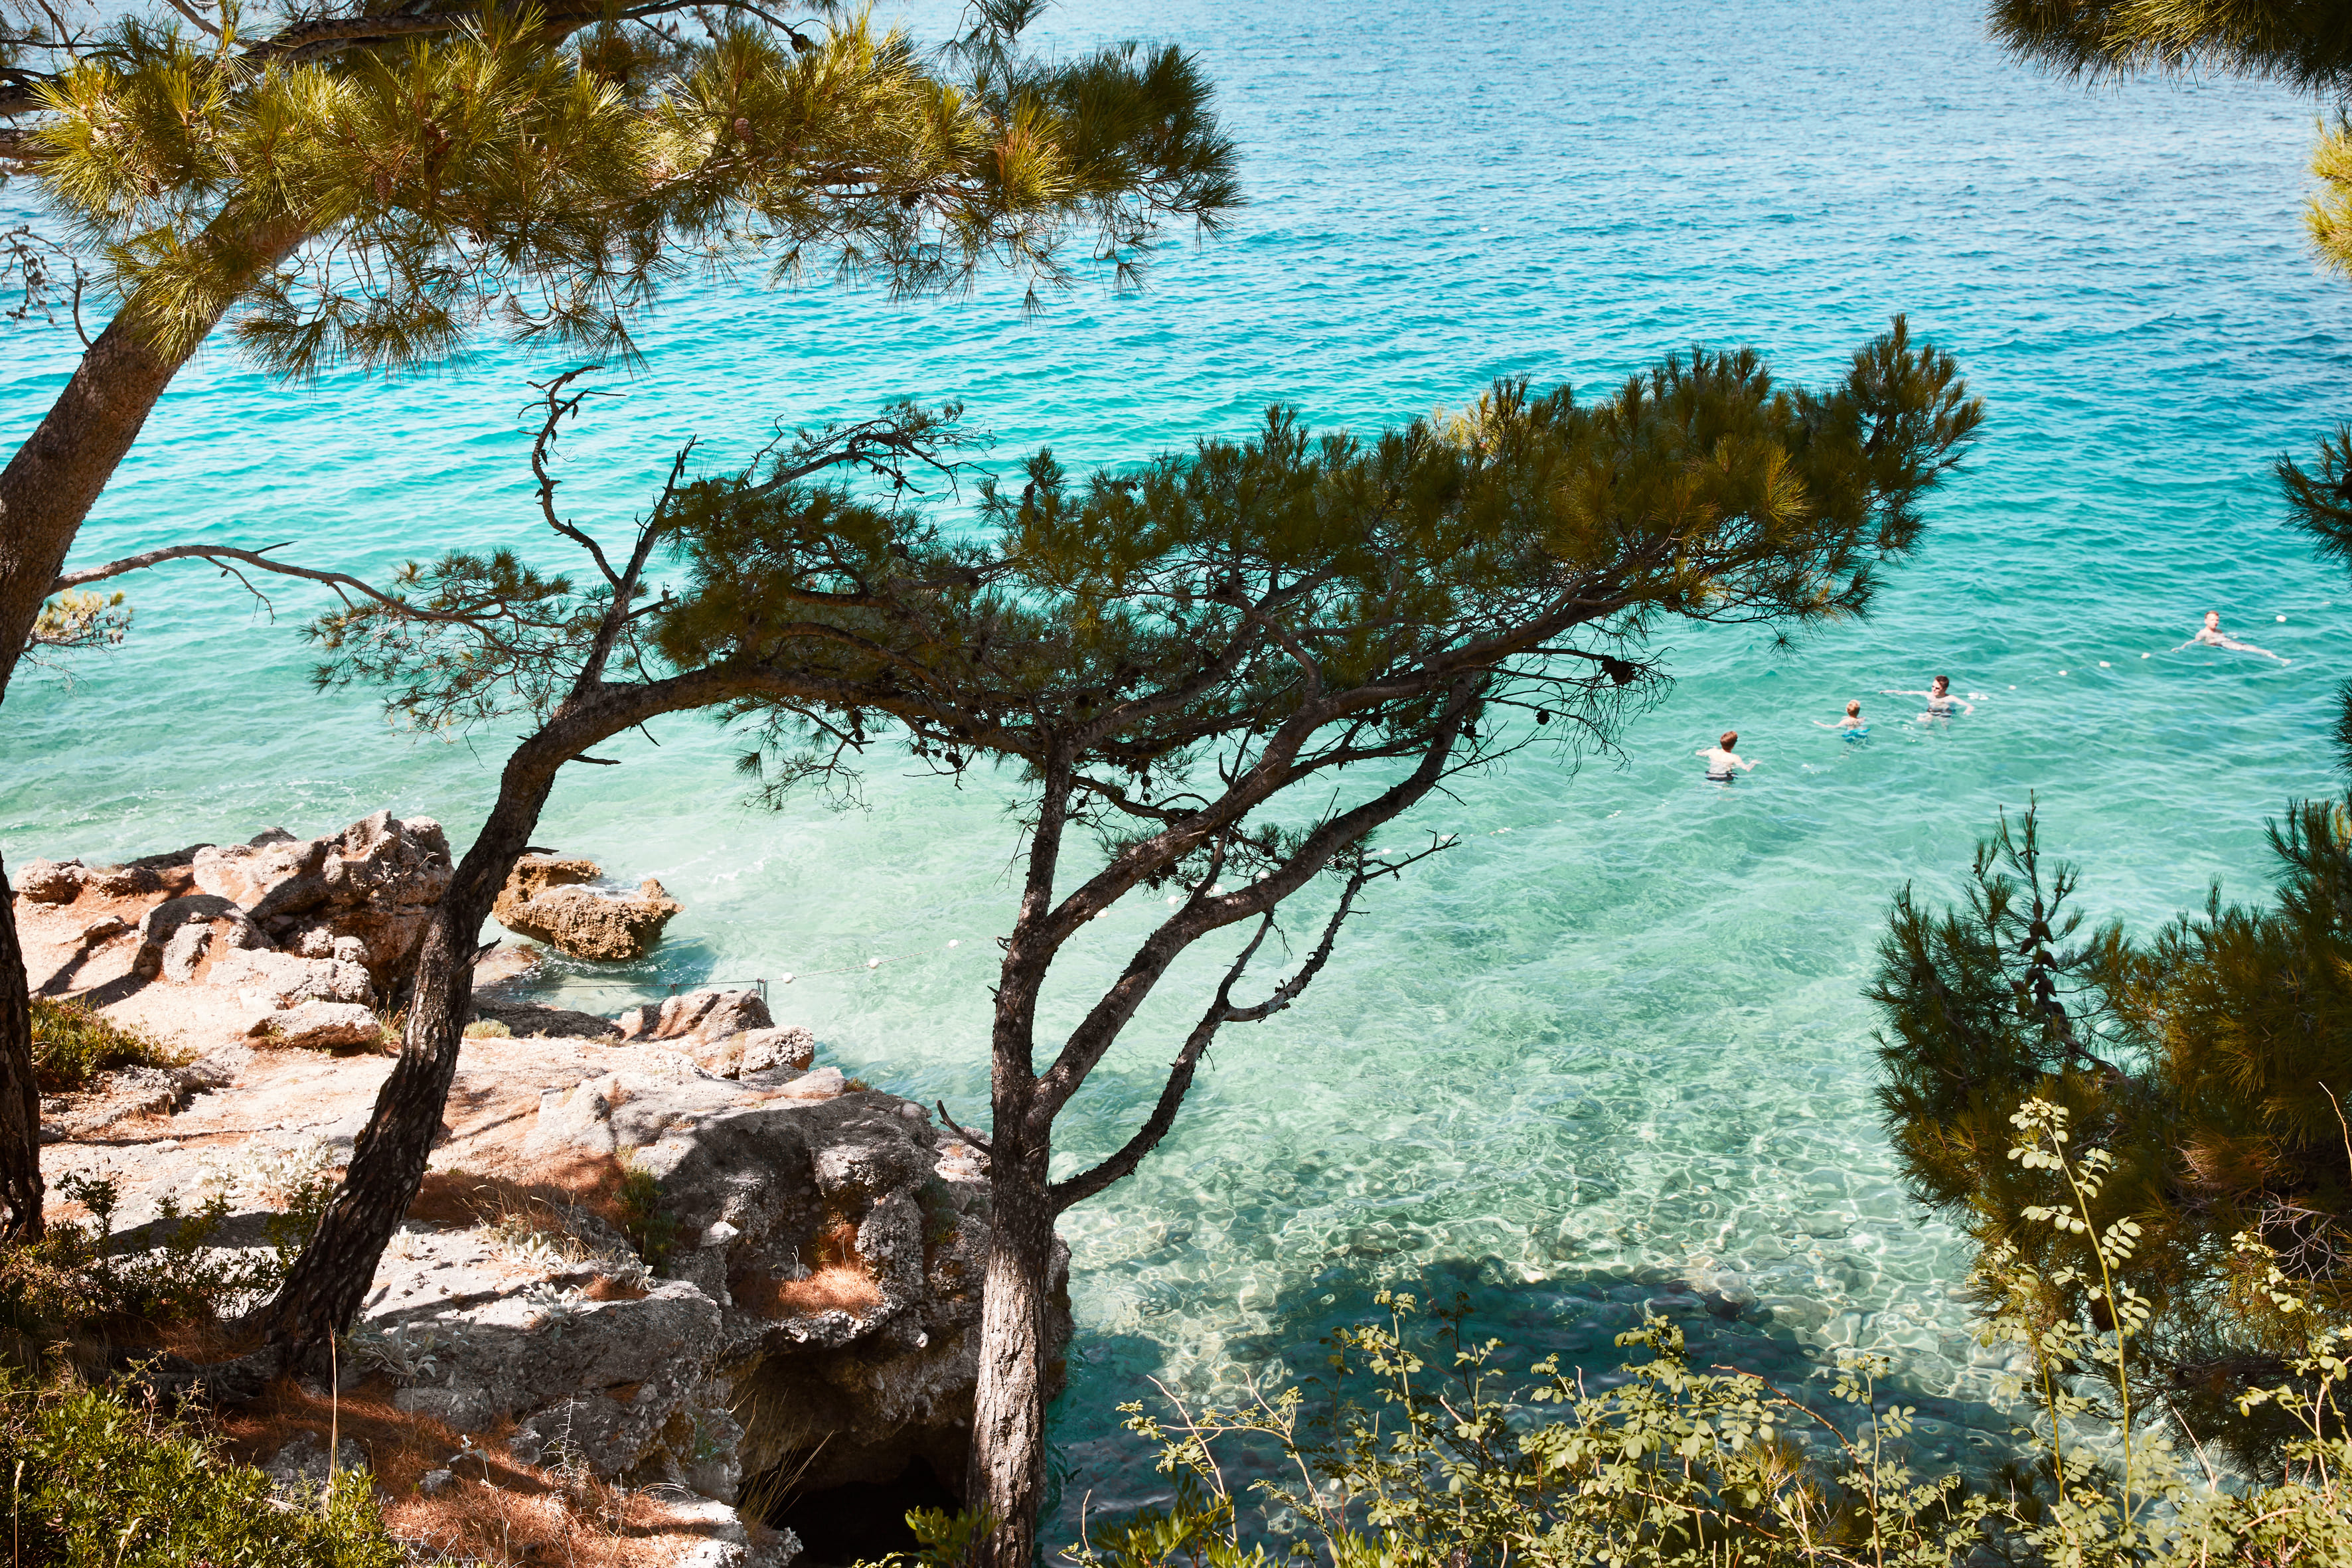 Dalmatien, Baska voda. Människor som badar i blått klart vatten. Några tallar på stranden fäller skuggor över vattnet.